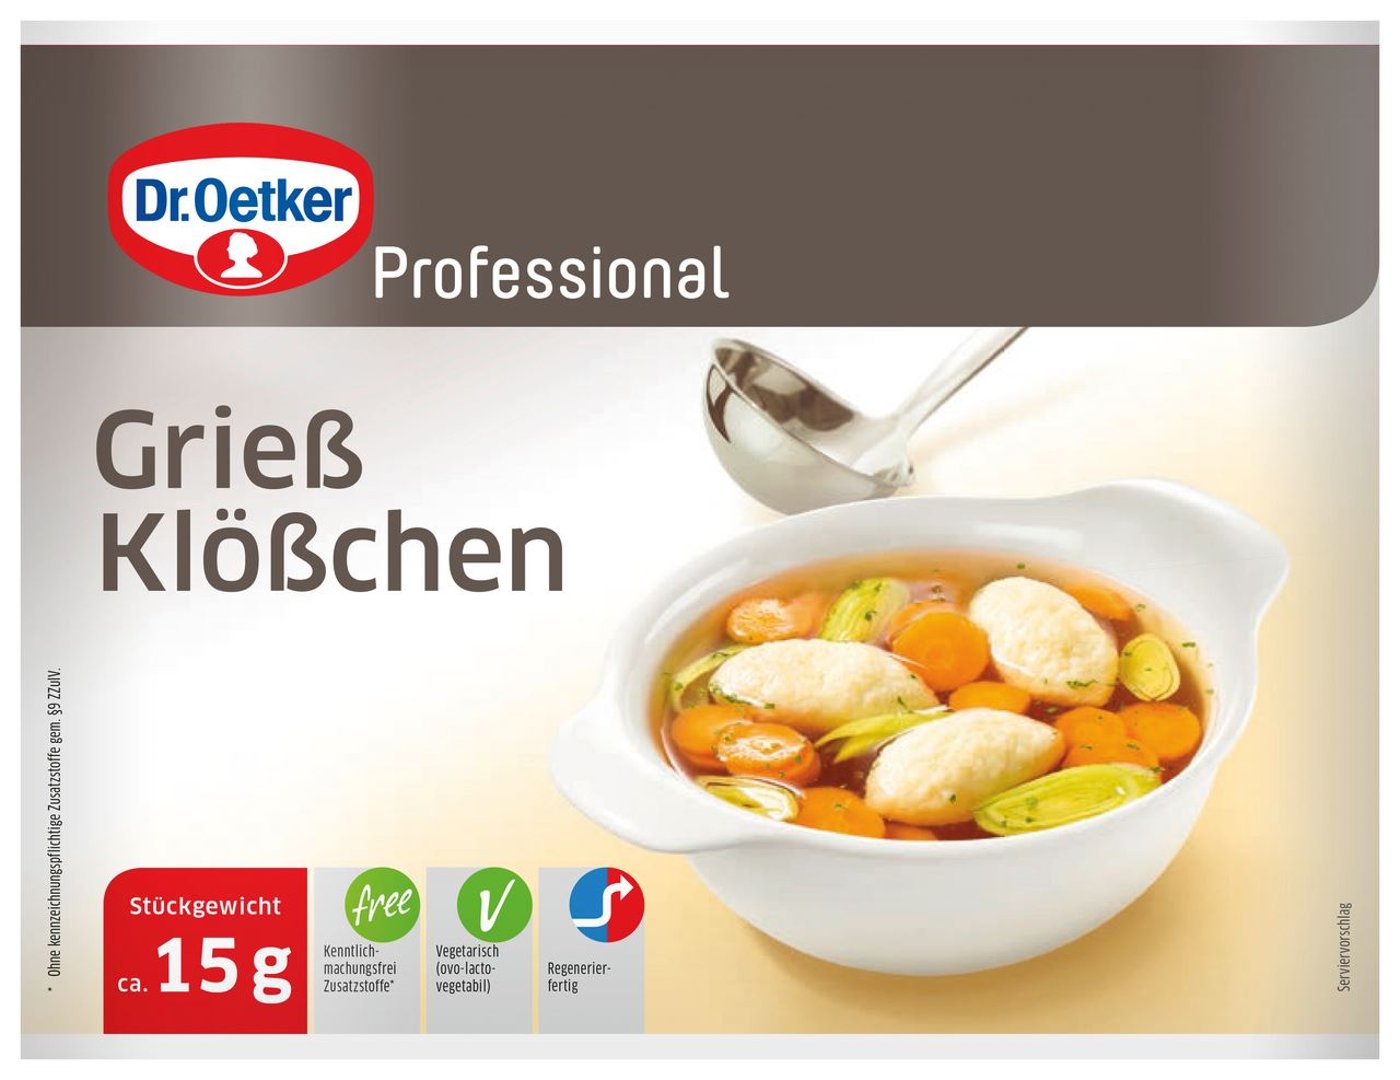 Dr. Oetker Professional - Griessklösschen tiefgefroren, einzeln entnehmbar - 1 kg Beutel